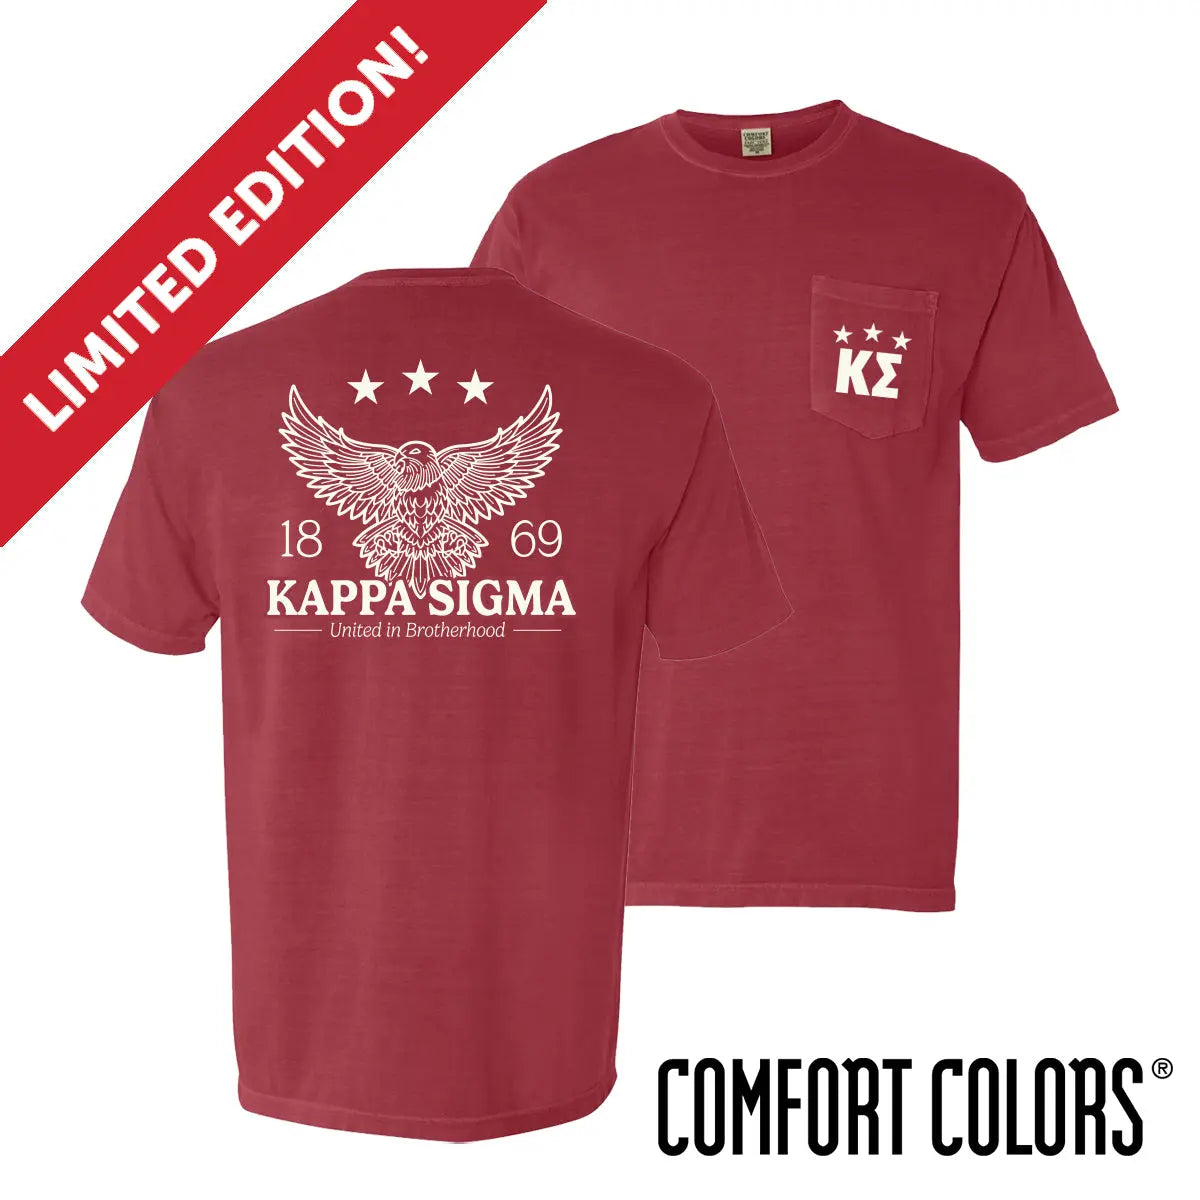 New! Kappa Sig Comfort Colors Patriotic Eagle Short Sleeve Tee Kappa Sigma